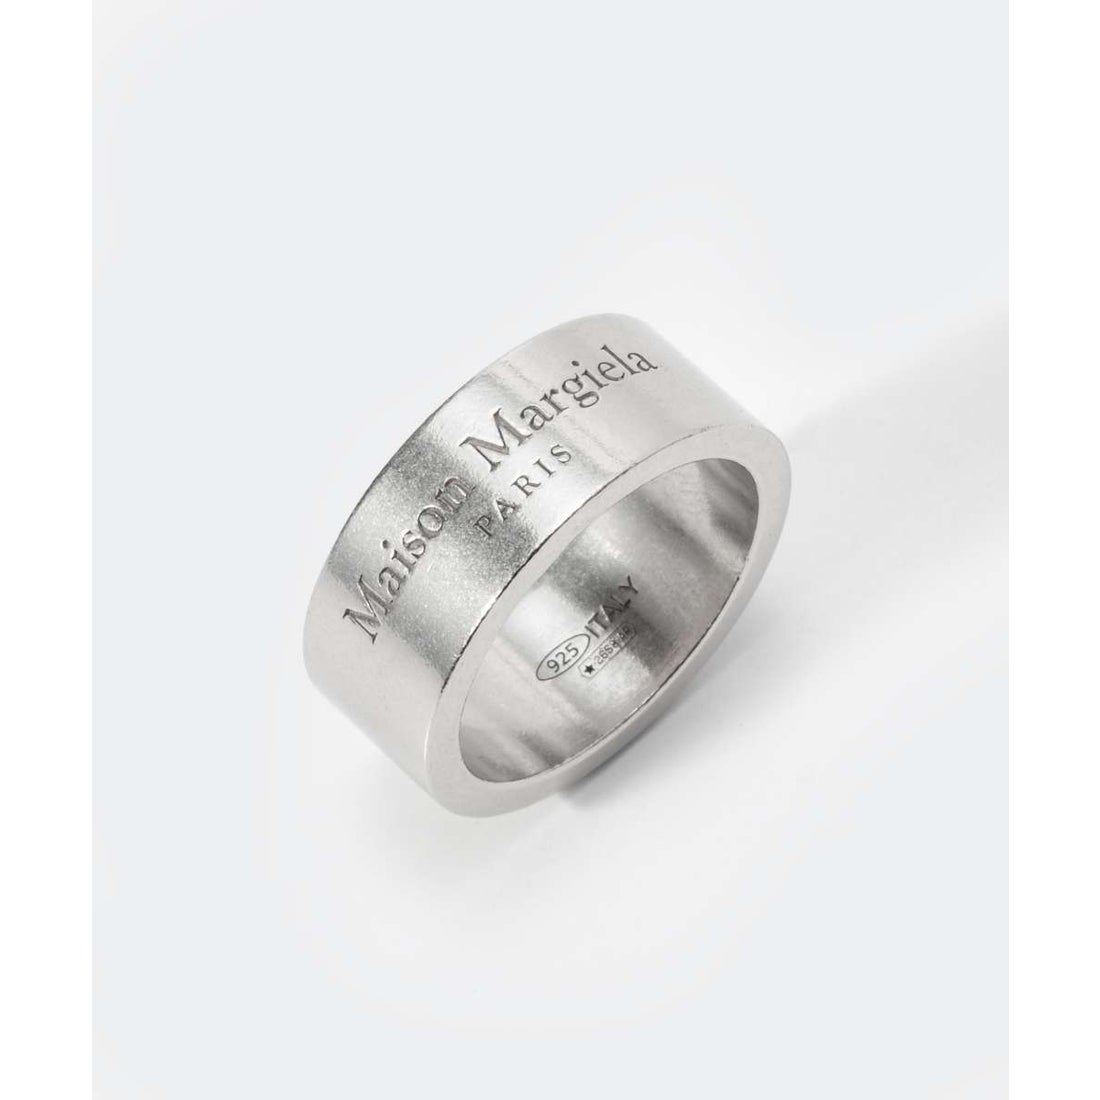 キーパー リング シルバー silver 925 17号 指輪 クロス メンズ